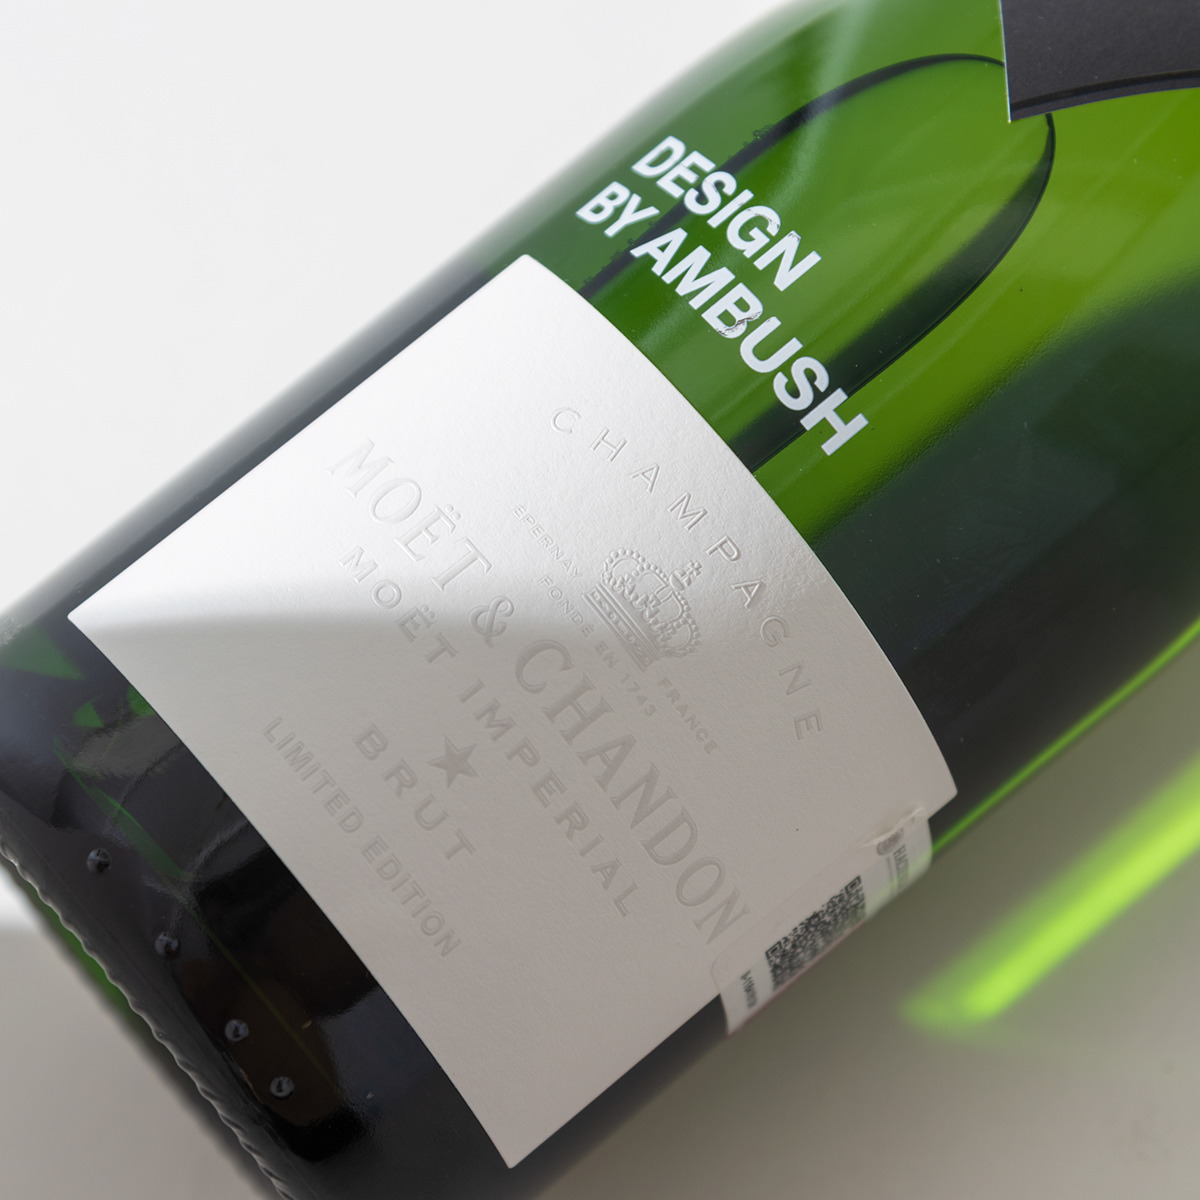 alcohol Ambush Champagne france Moet Photography  product Product Photography Vinos Yoon ambush